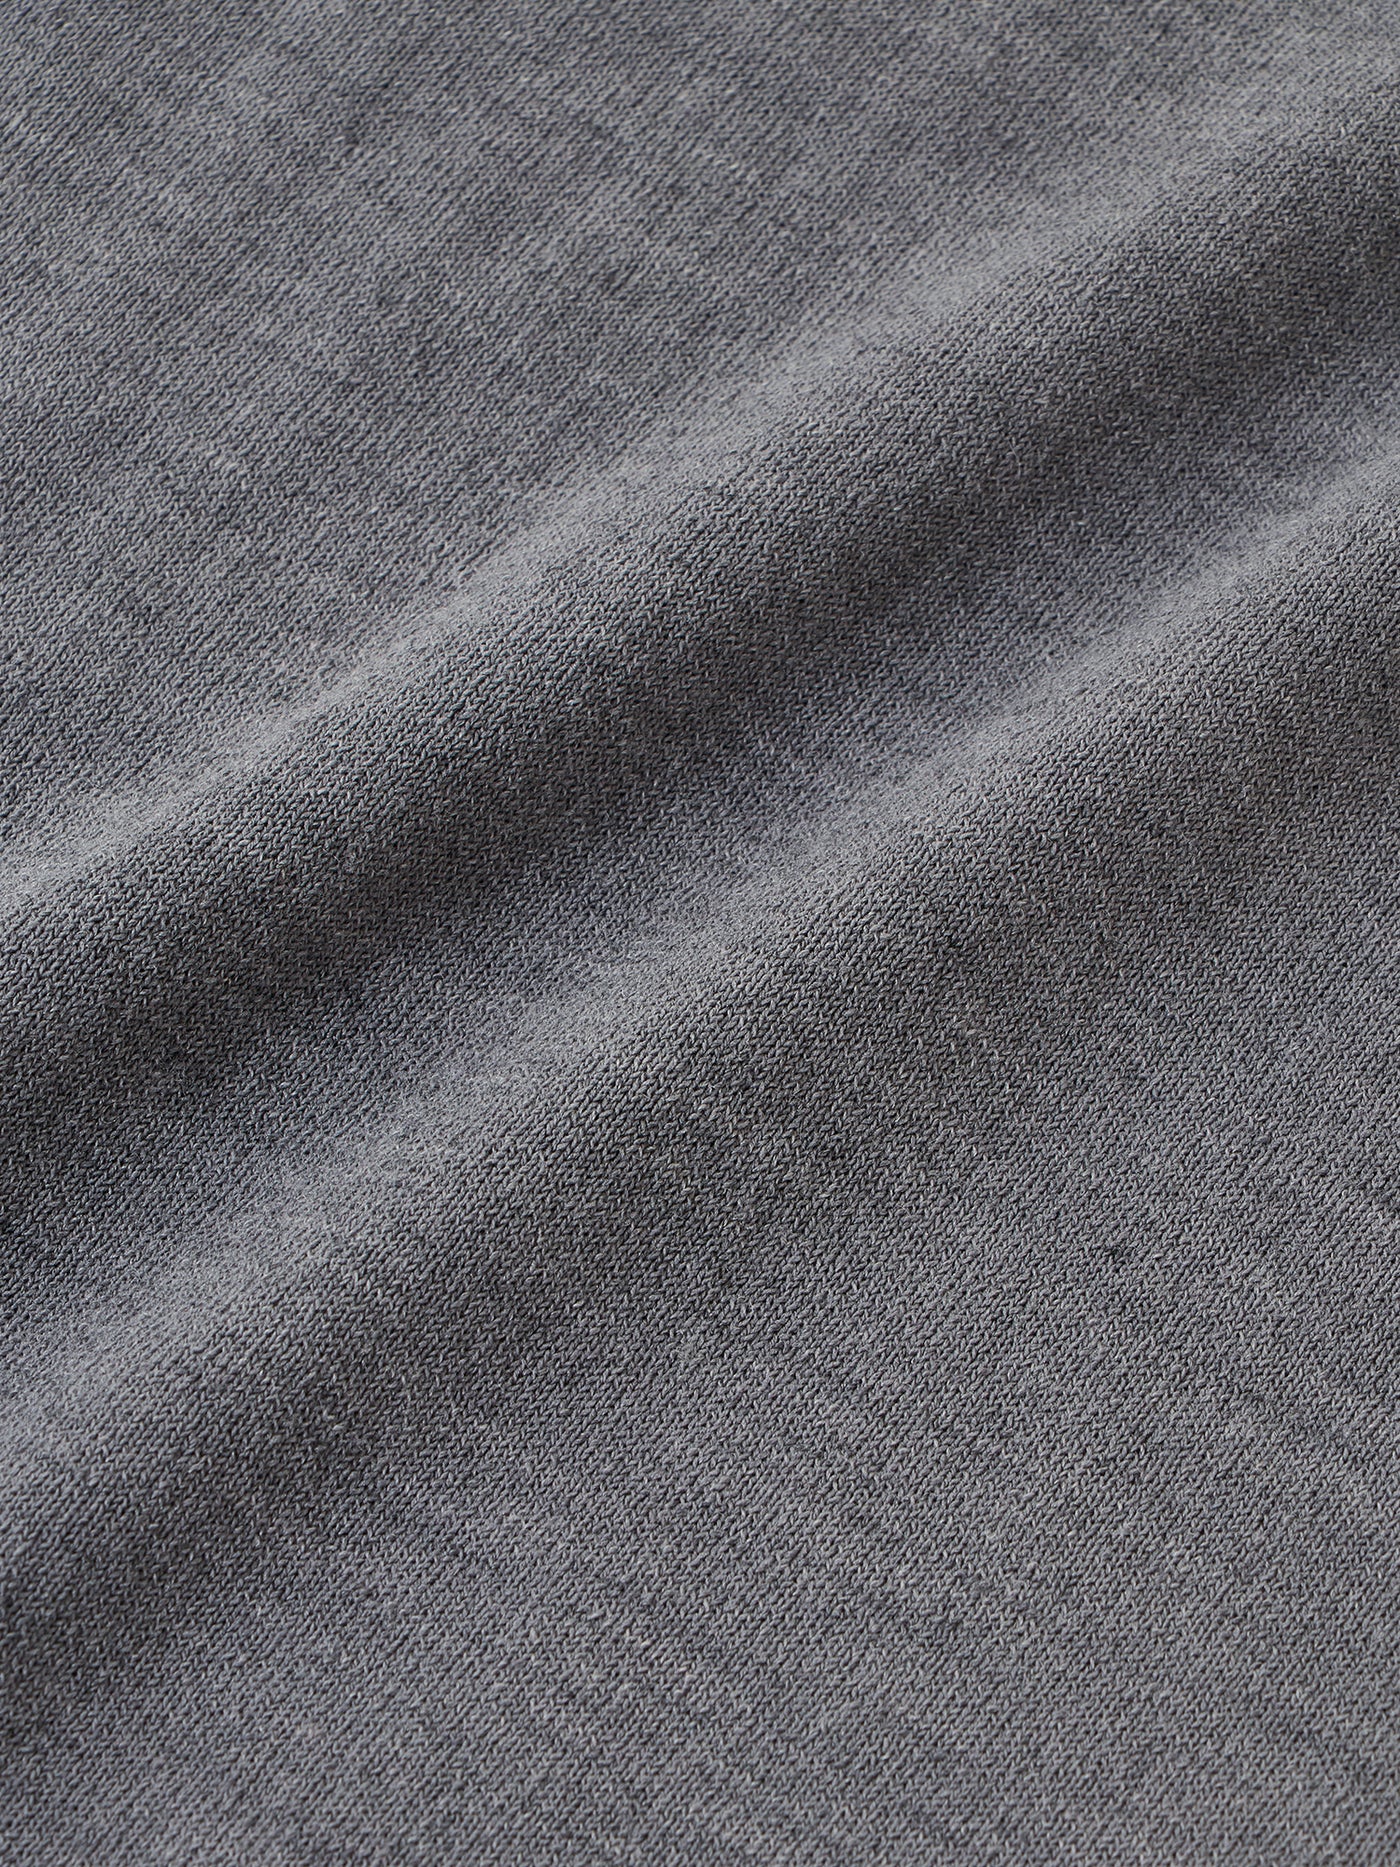 Wholegarment Wool Knit L/S T-shirt